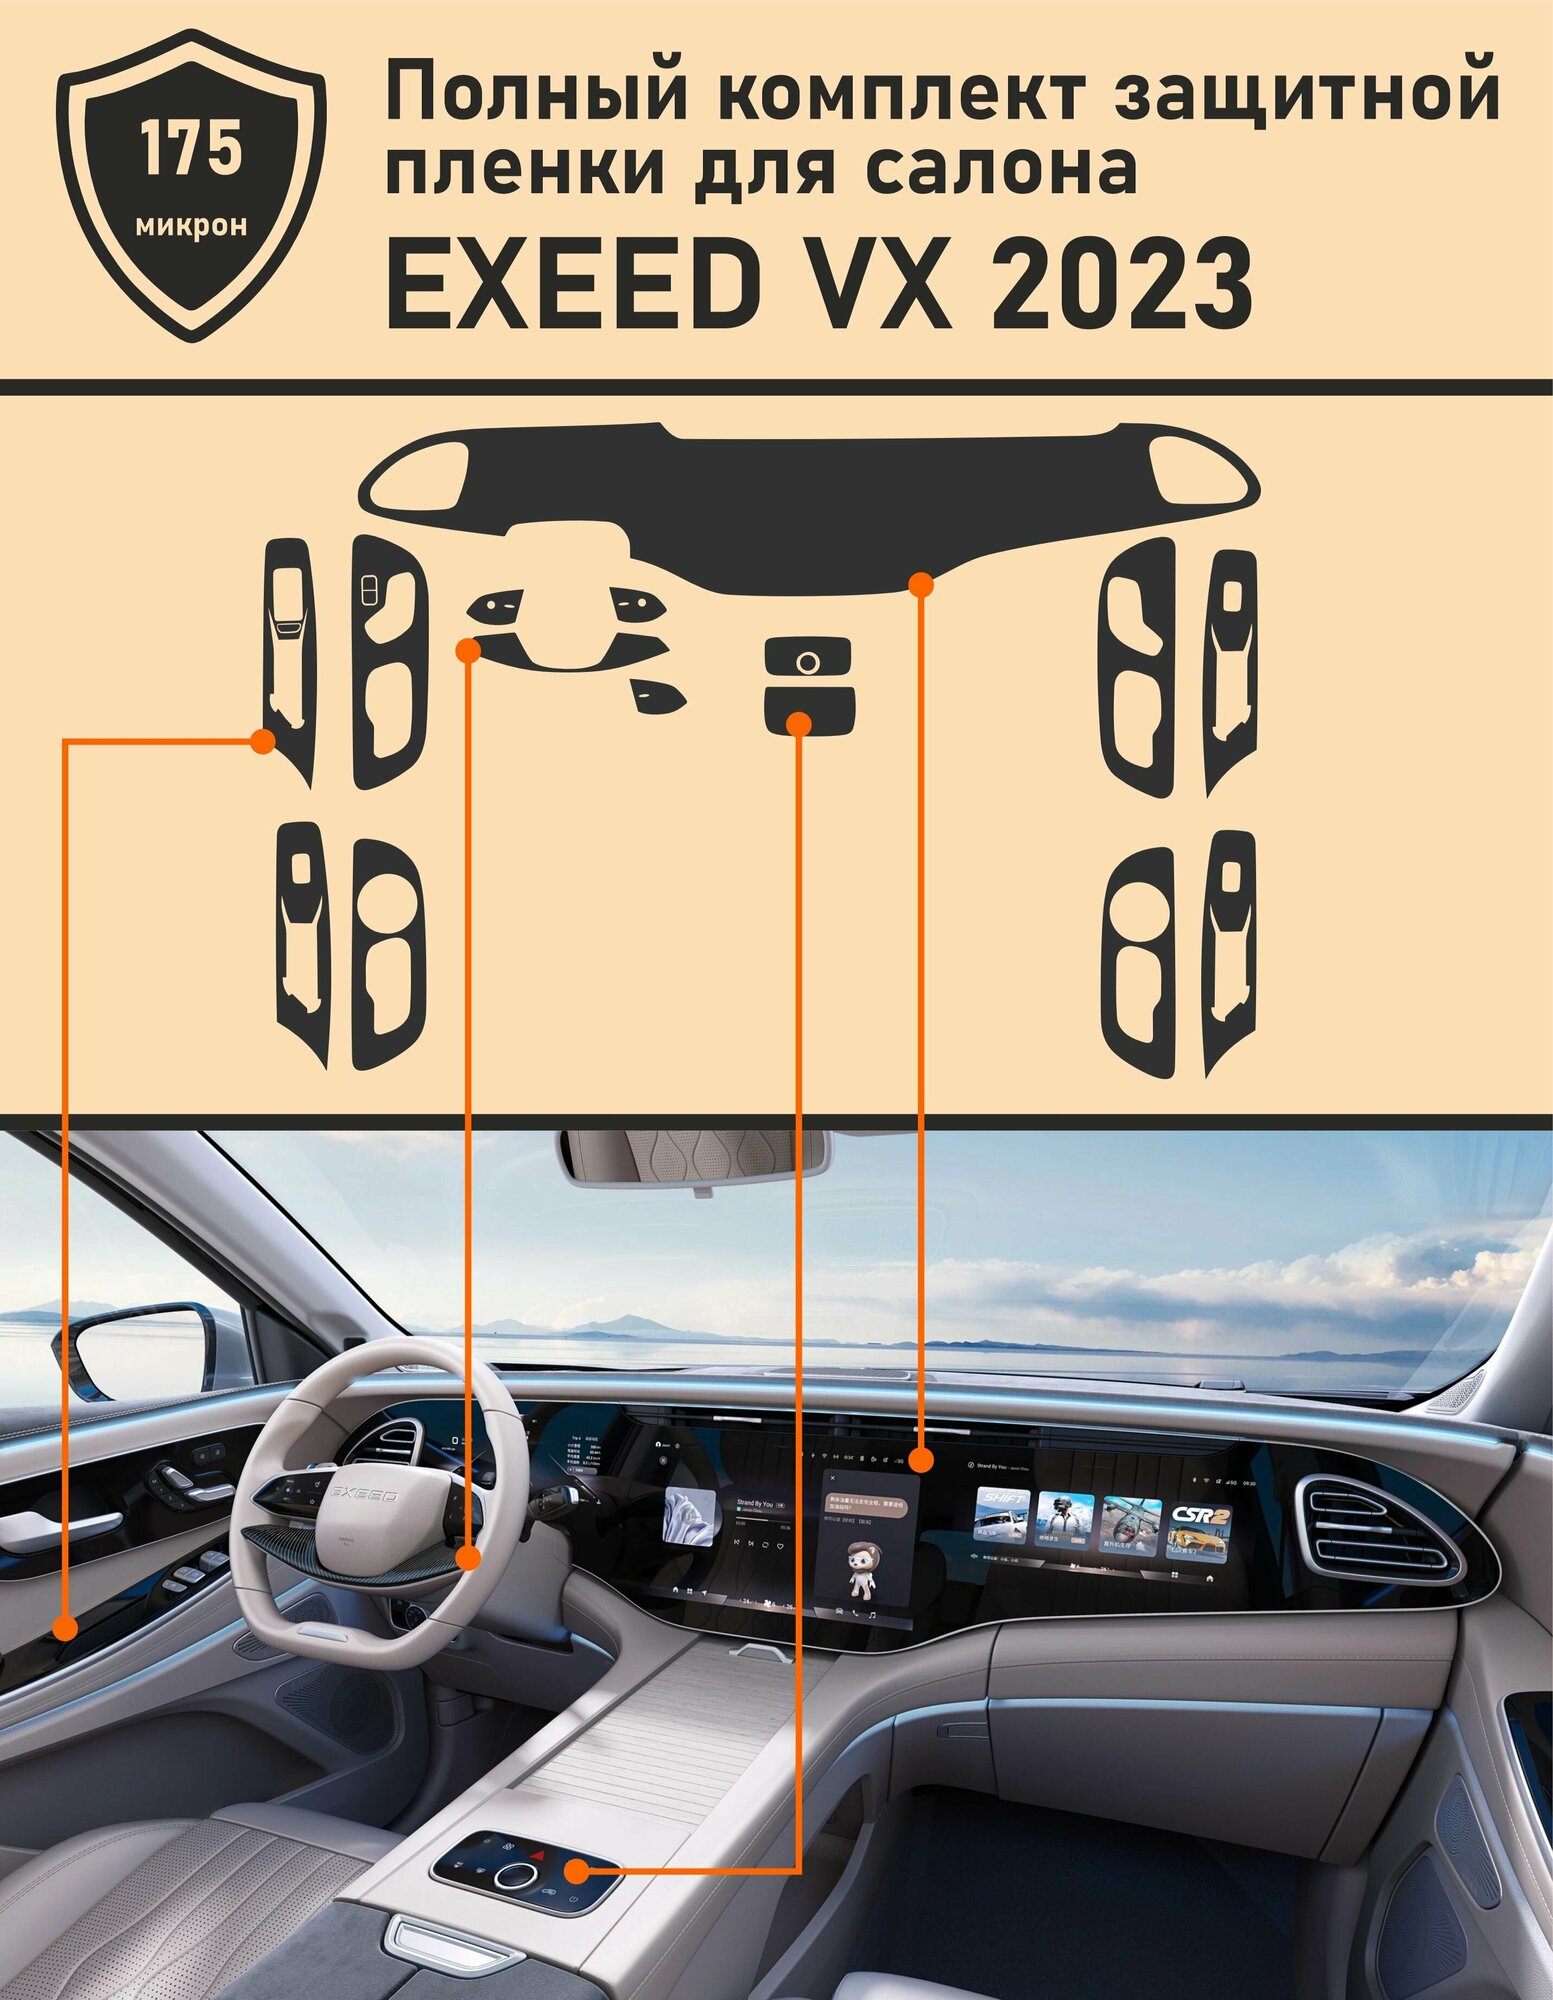 Exeed VX 2023/Полный комплект защитной пленки для салона